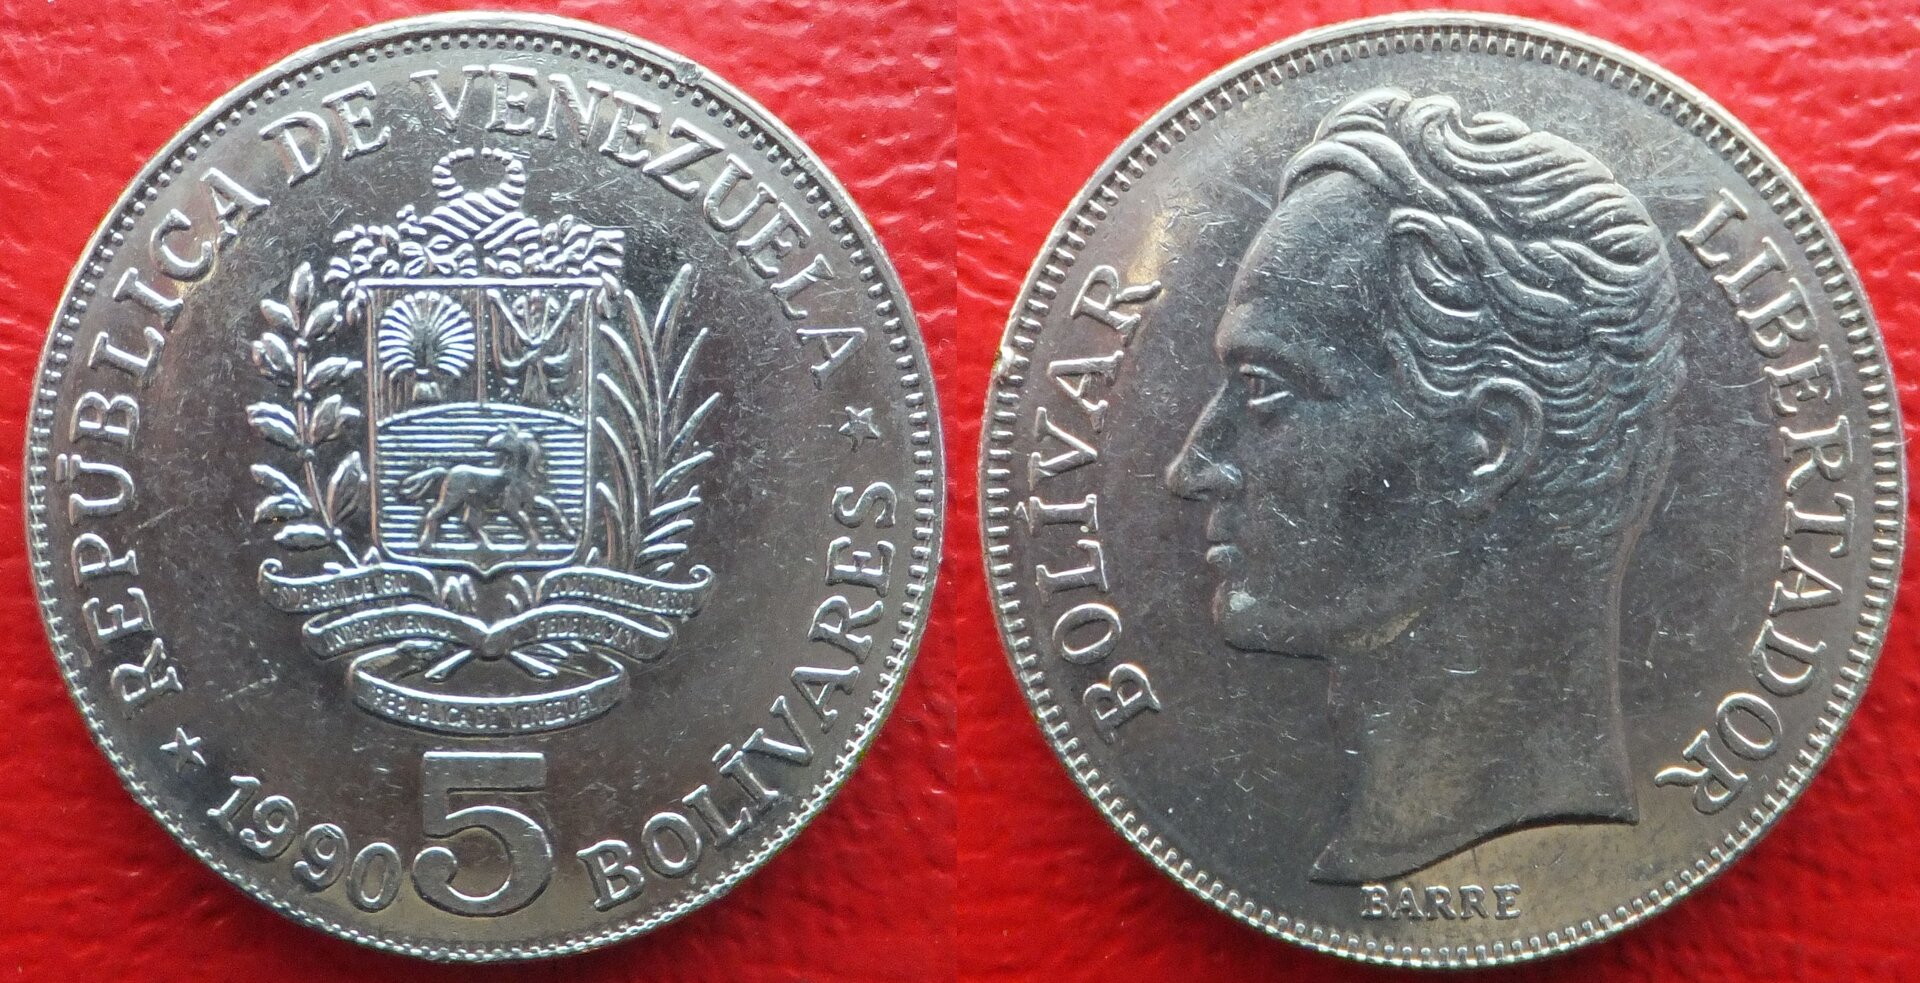 Venezuela 5 bolivares 1990 (3).jpg